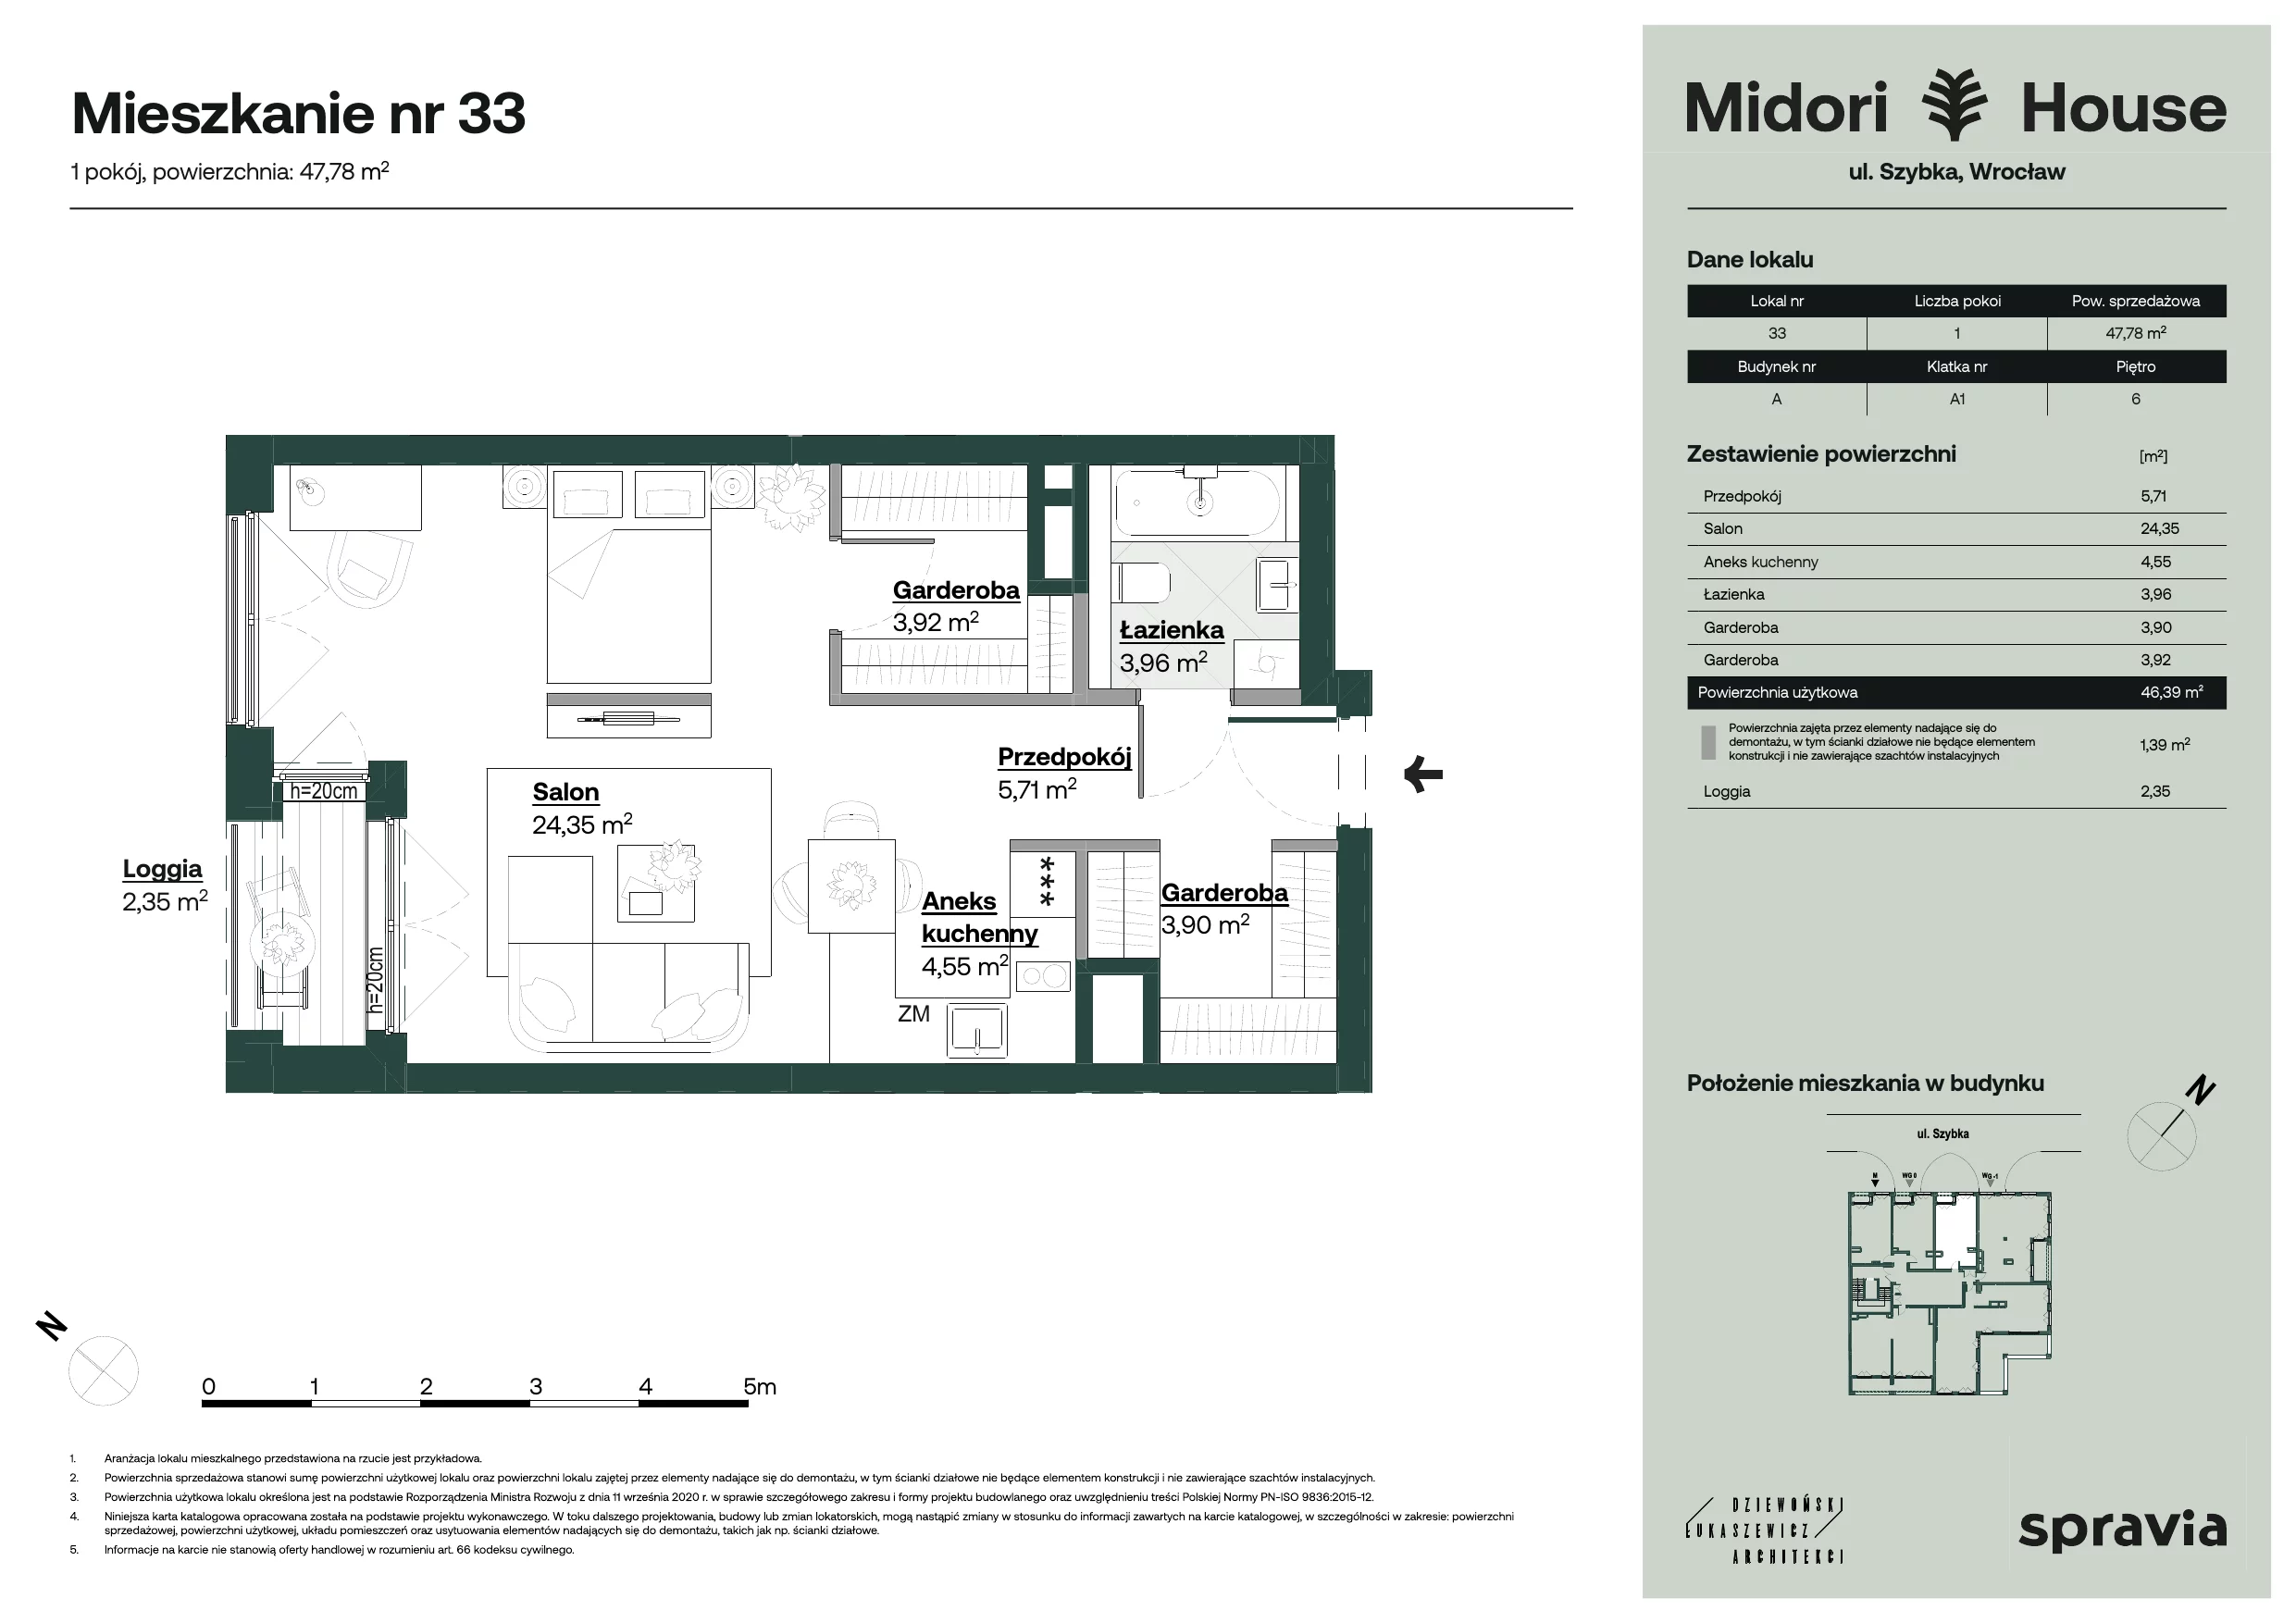 Apartament 47,78 m², piętro 6, oferta nr 33, Midori House, Wrocław, Przedmieście Oławskie, ul. Szybka 9